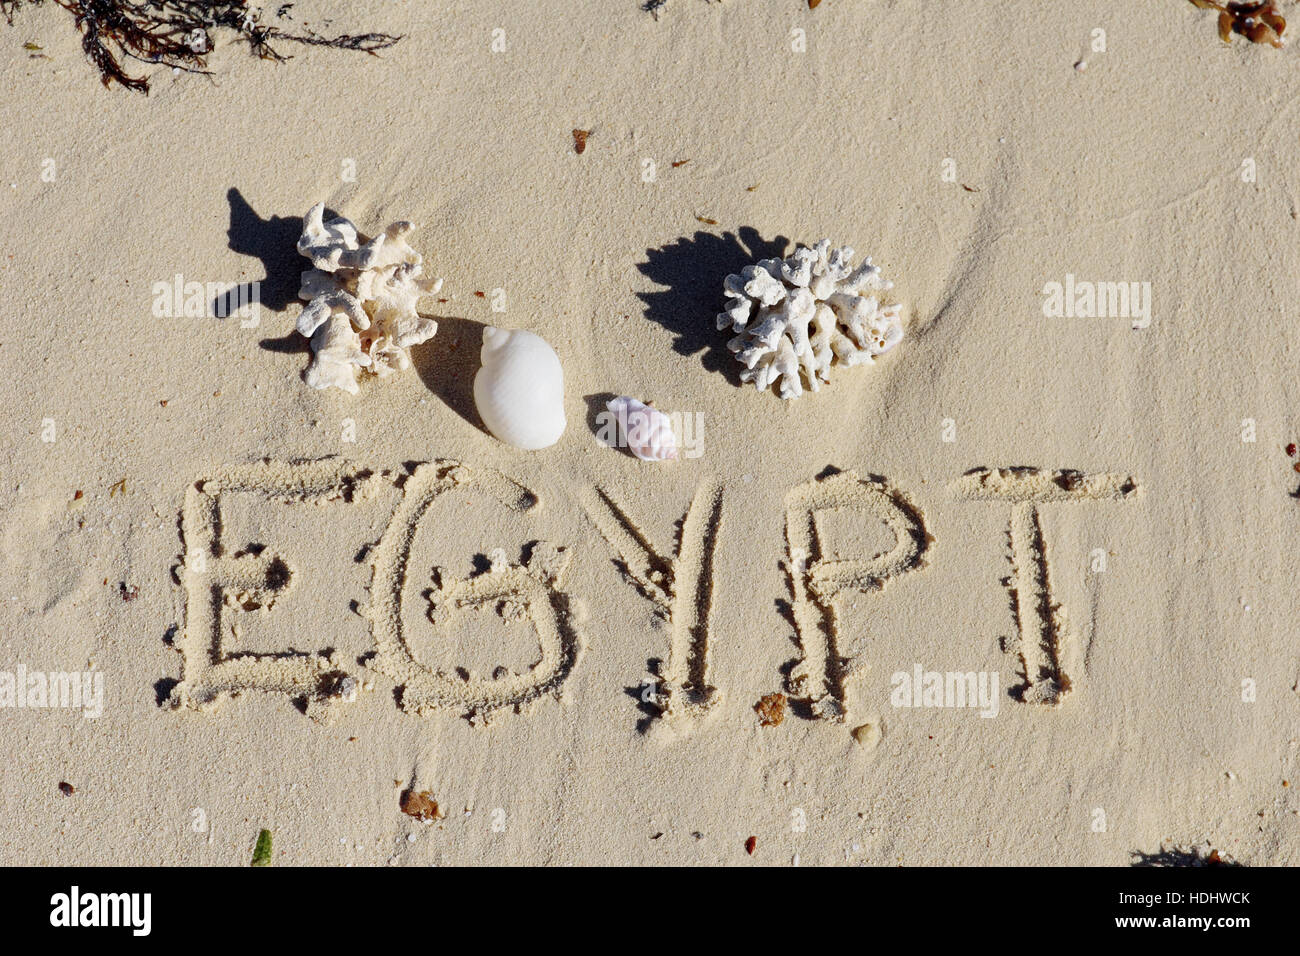 Inscription " Egypt" on a sand n a  beach. Stock Photo